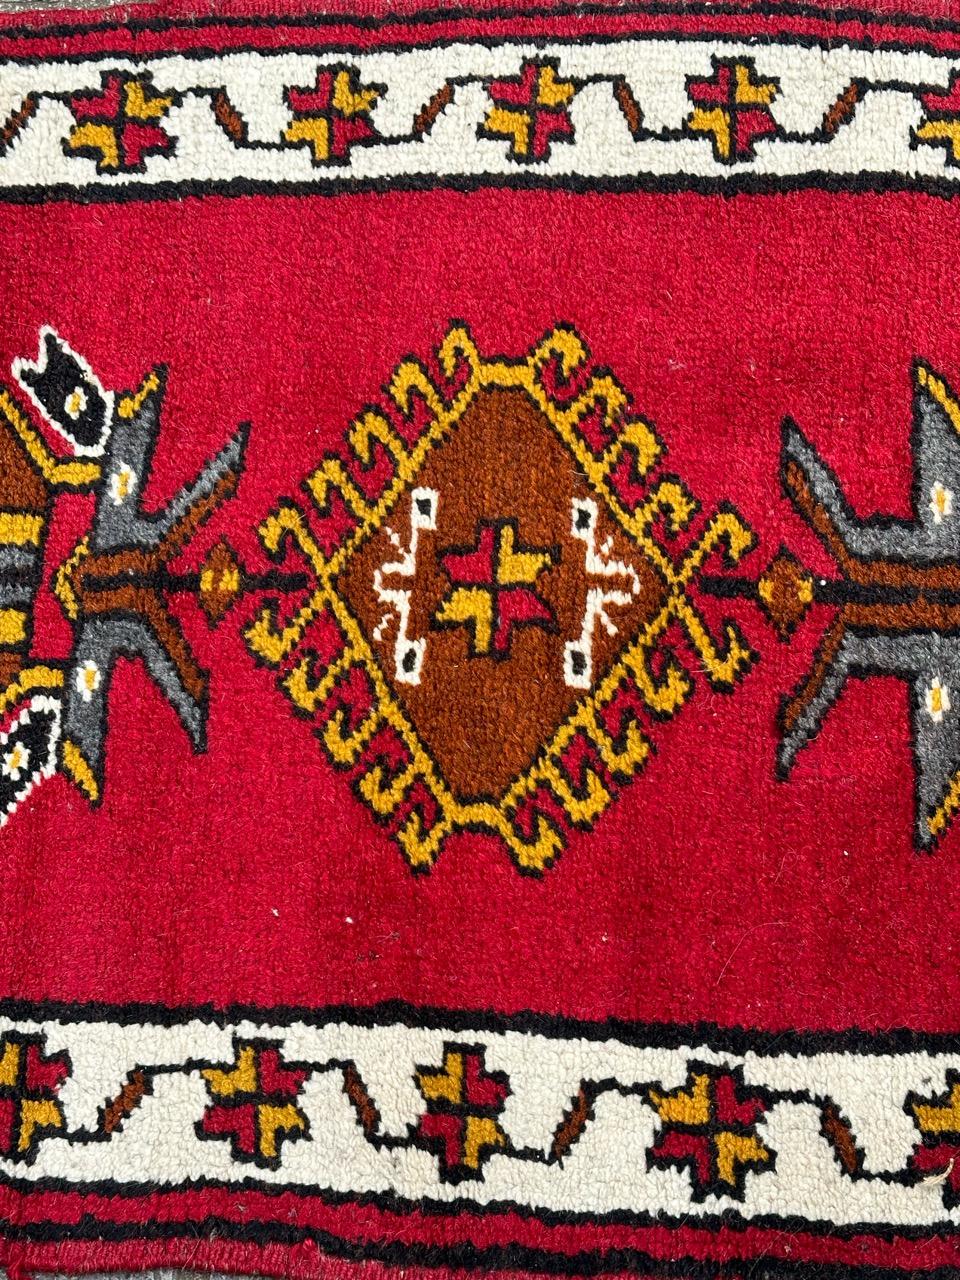 Joli tapis turc vintage avec un beau design géométrique et de belles couleurs avec un fond rouge, jaune, marron, gris, blanc et noir, entièrement noué à la main avec de la laine sur une fondation en laine. 

✨✨✨
